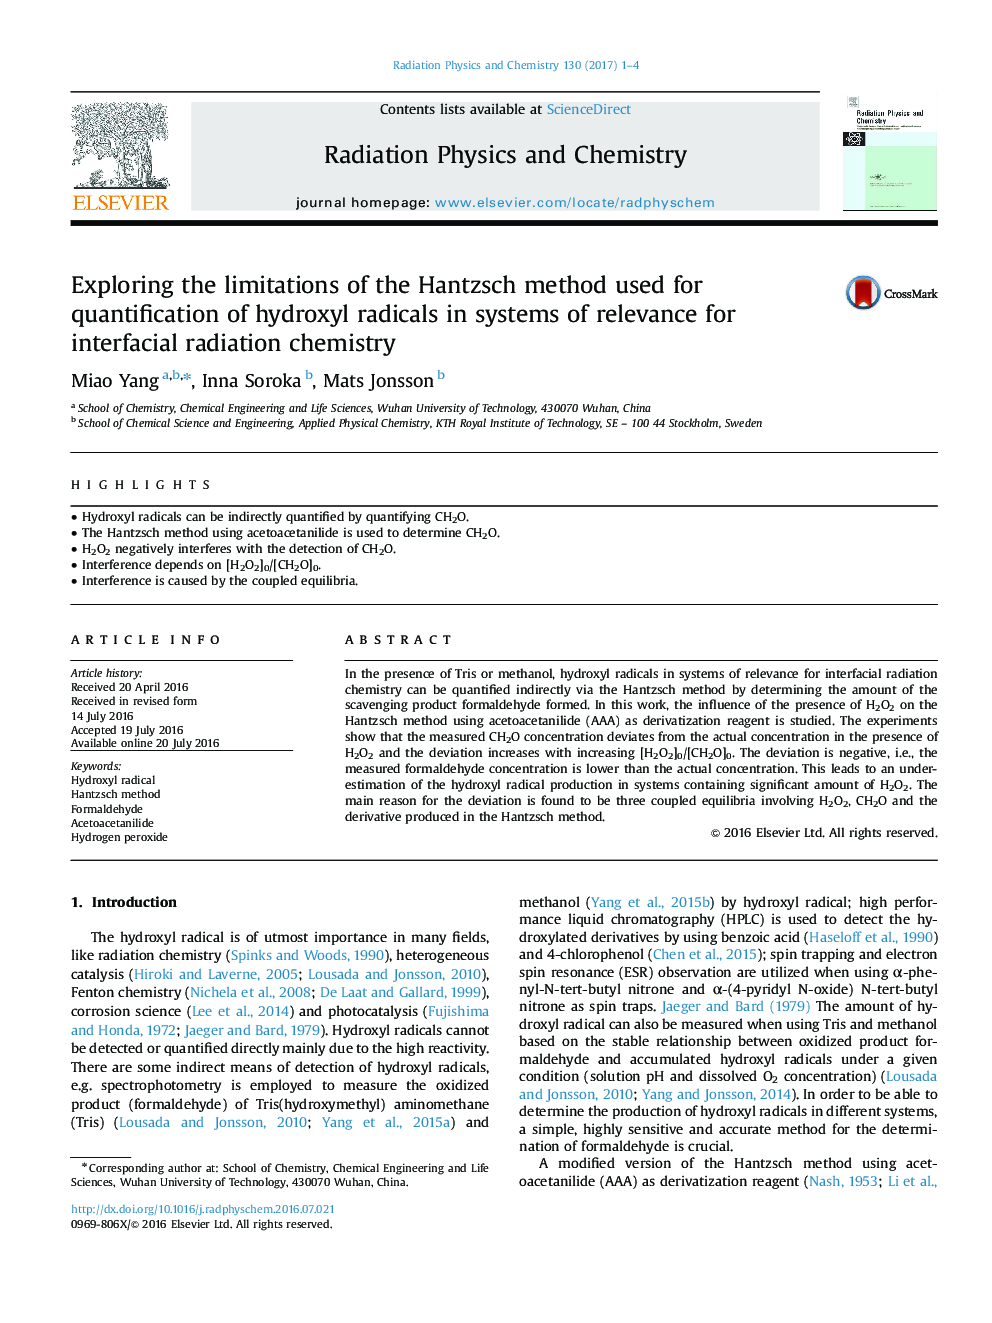 بررسی محدودیت های روش هانتزچ مورد استفاده برای اندازه گیری رادیکال های هیدروکسیل در سیستم های مرتبط با شیمی فشرده